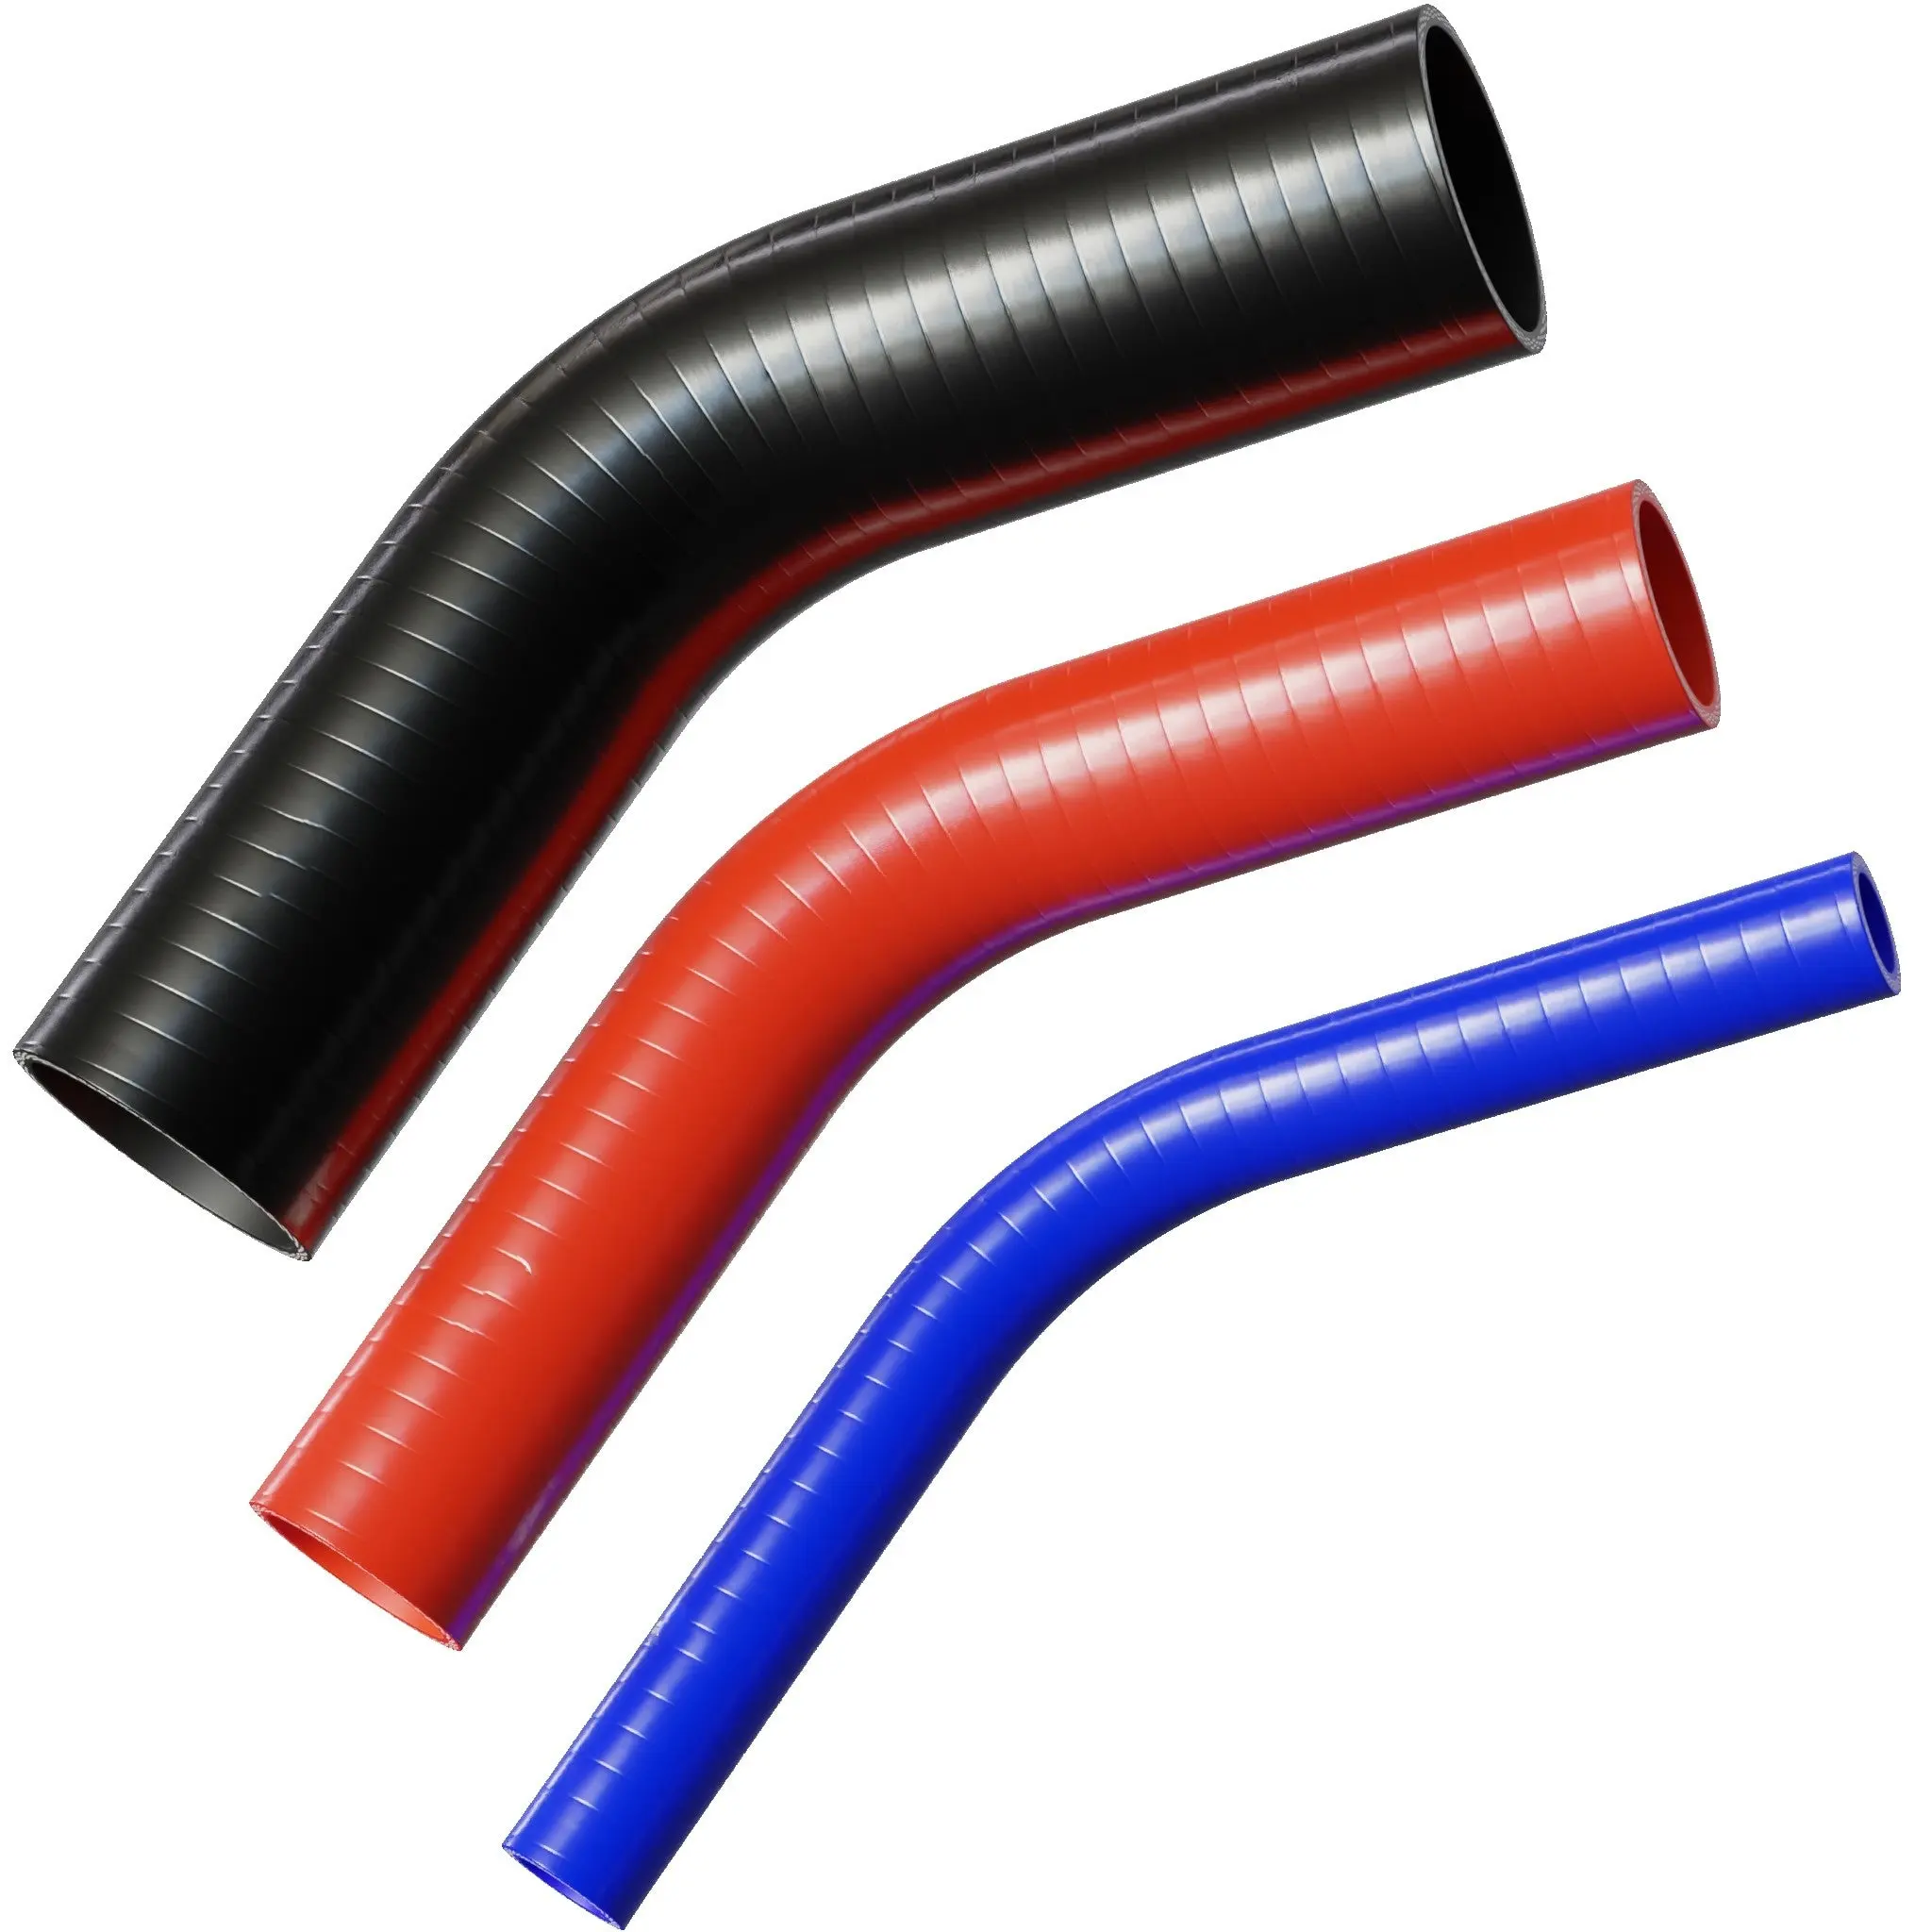 Hochwertiger geflochtener Automobil-Rückschneider 45-Grad flexibler Ellbogen Silikon-Gummibohr schlauch in Rot